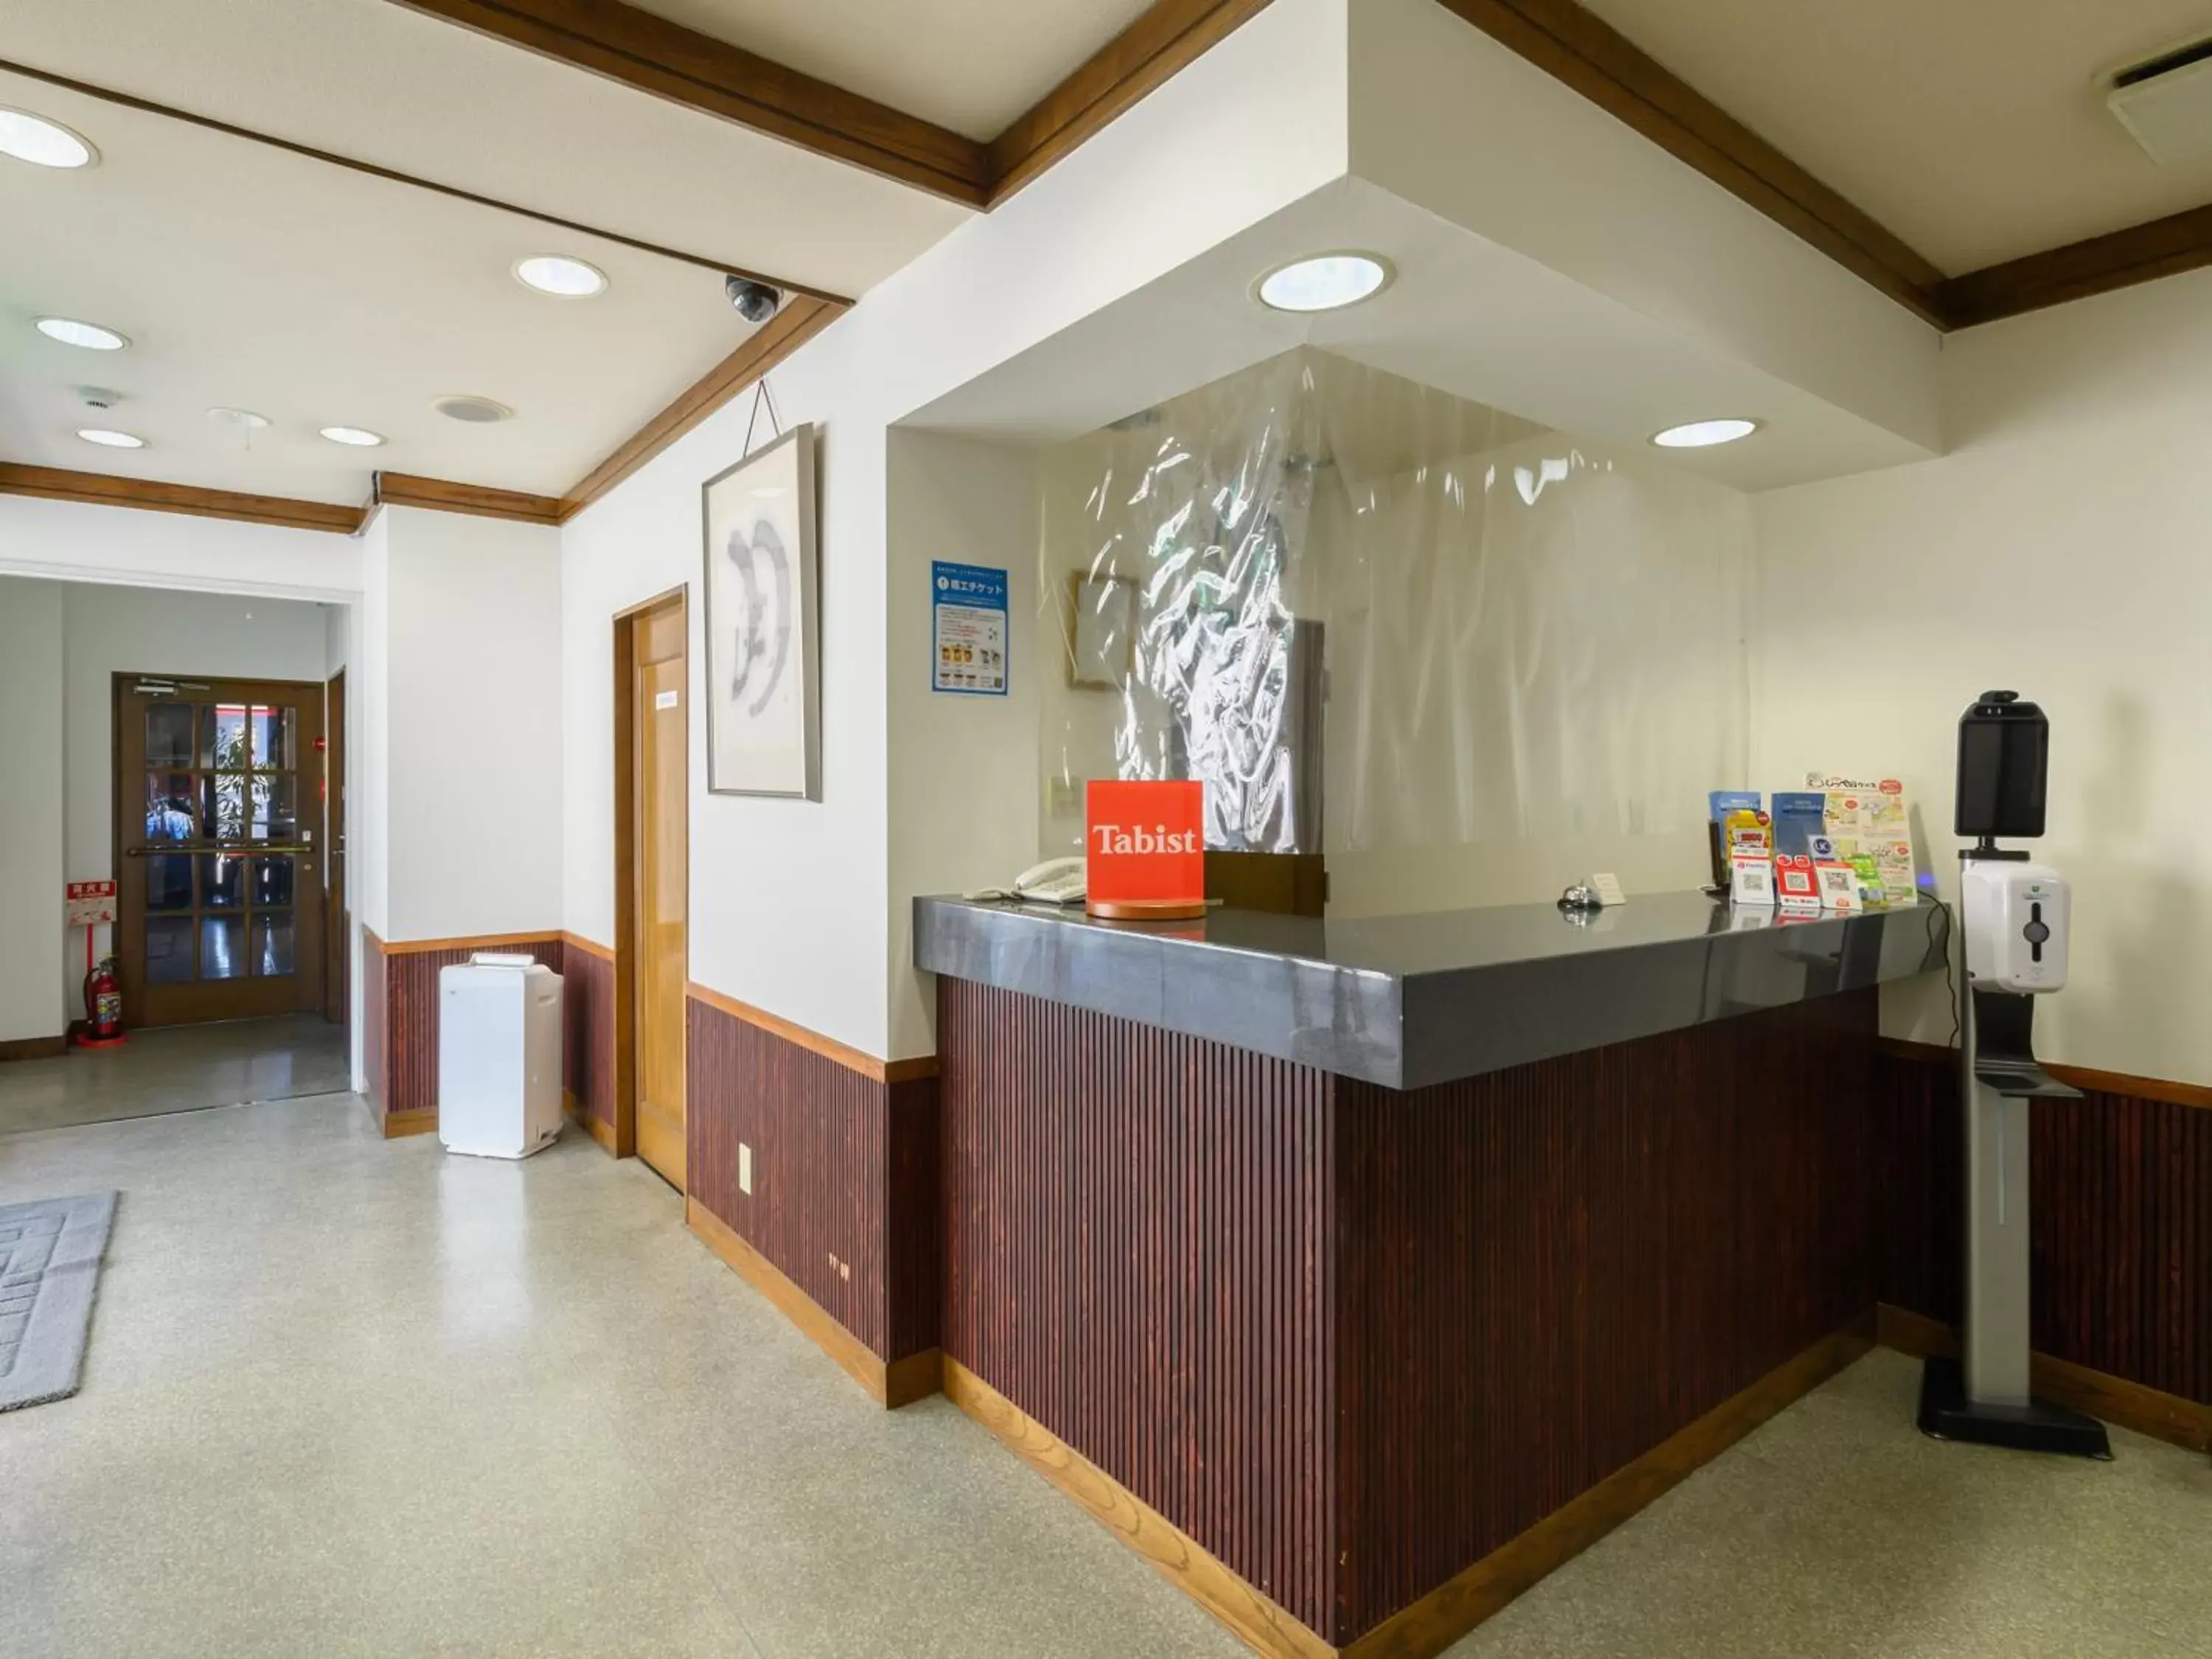 Lobby or reception, Lobby/Reception in Tabist IWATA Station Hotel